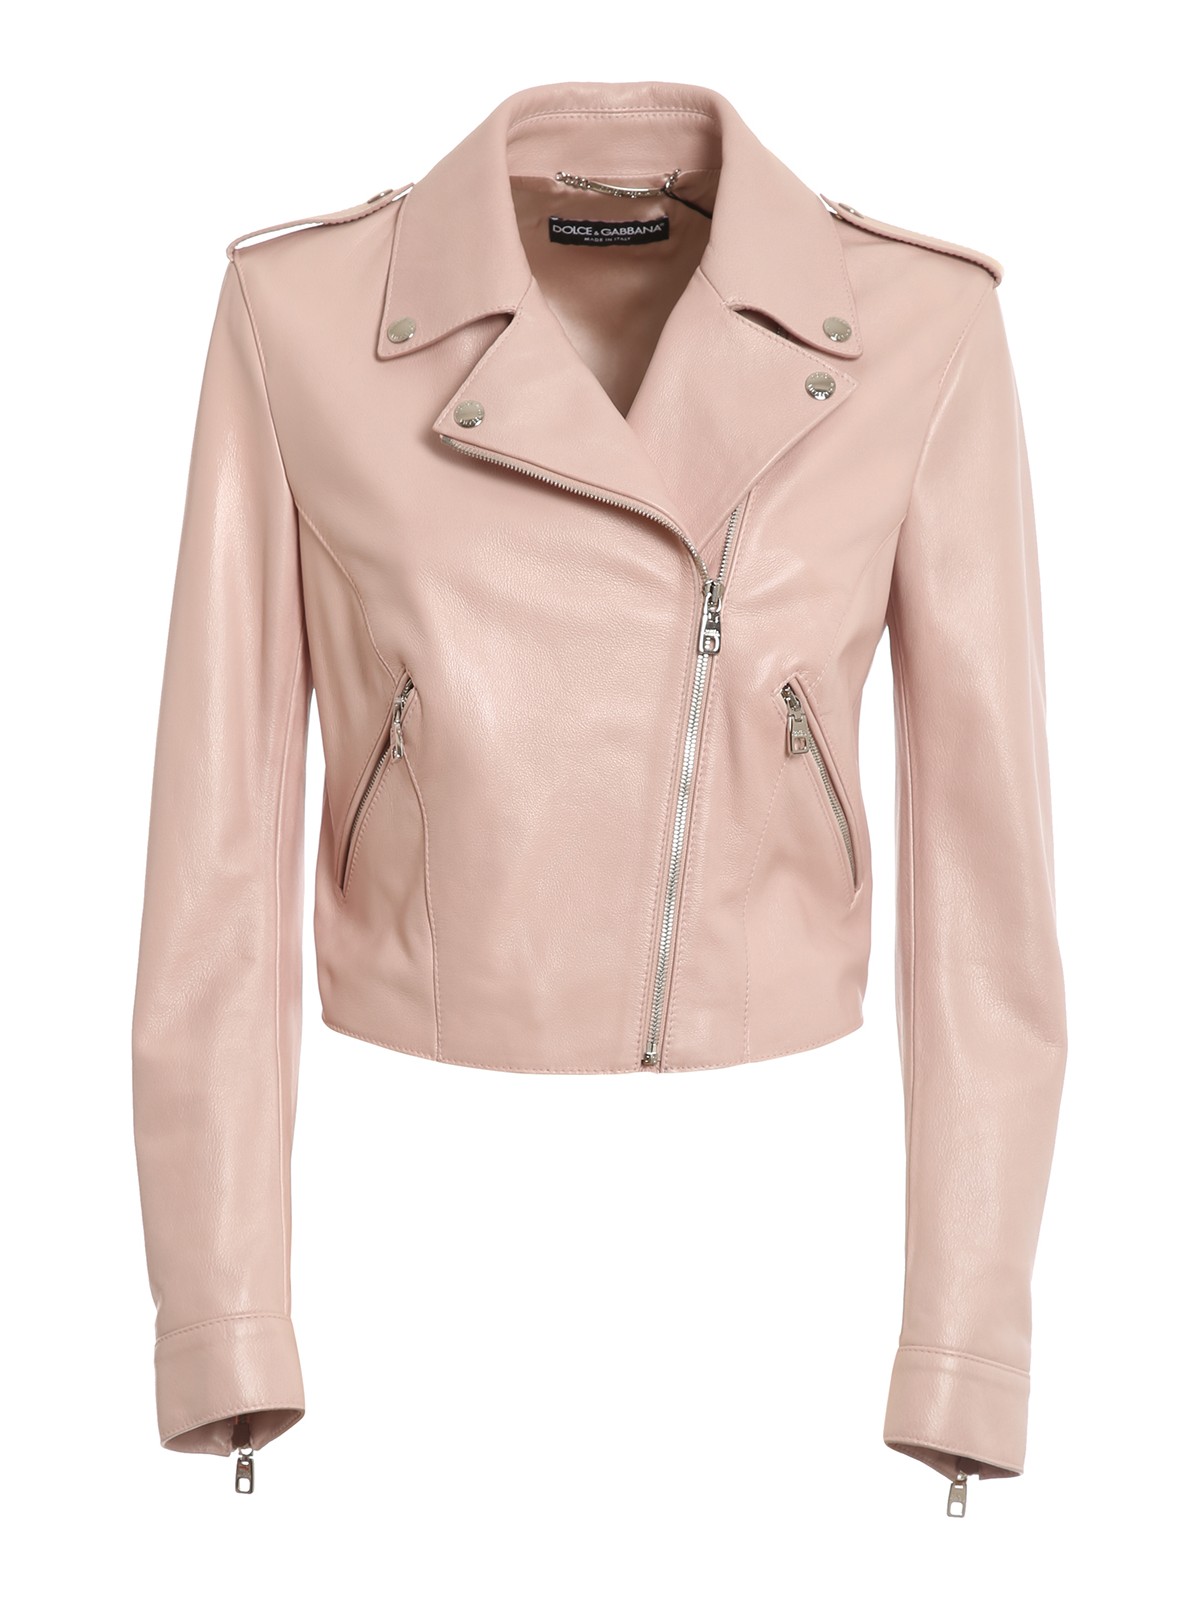 Leather jacket Dolce & Gabbana - Grainy leather jacket